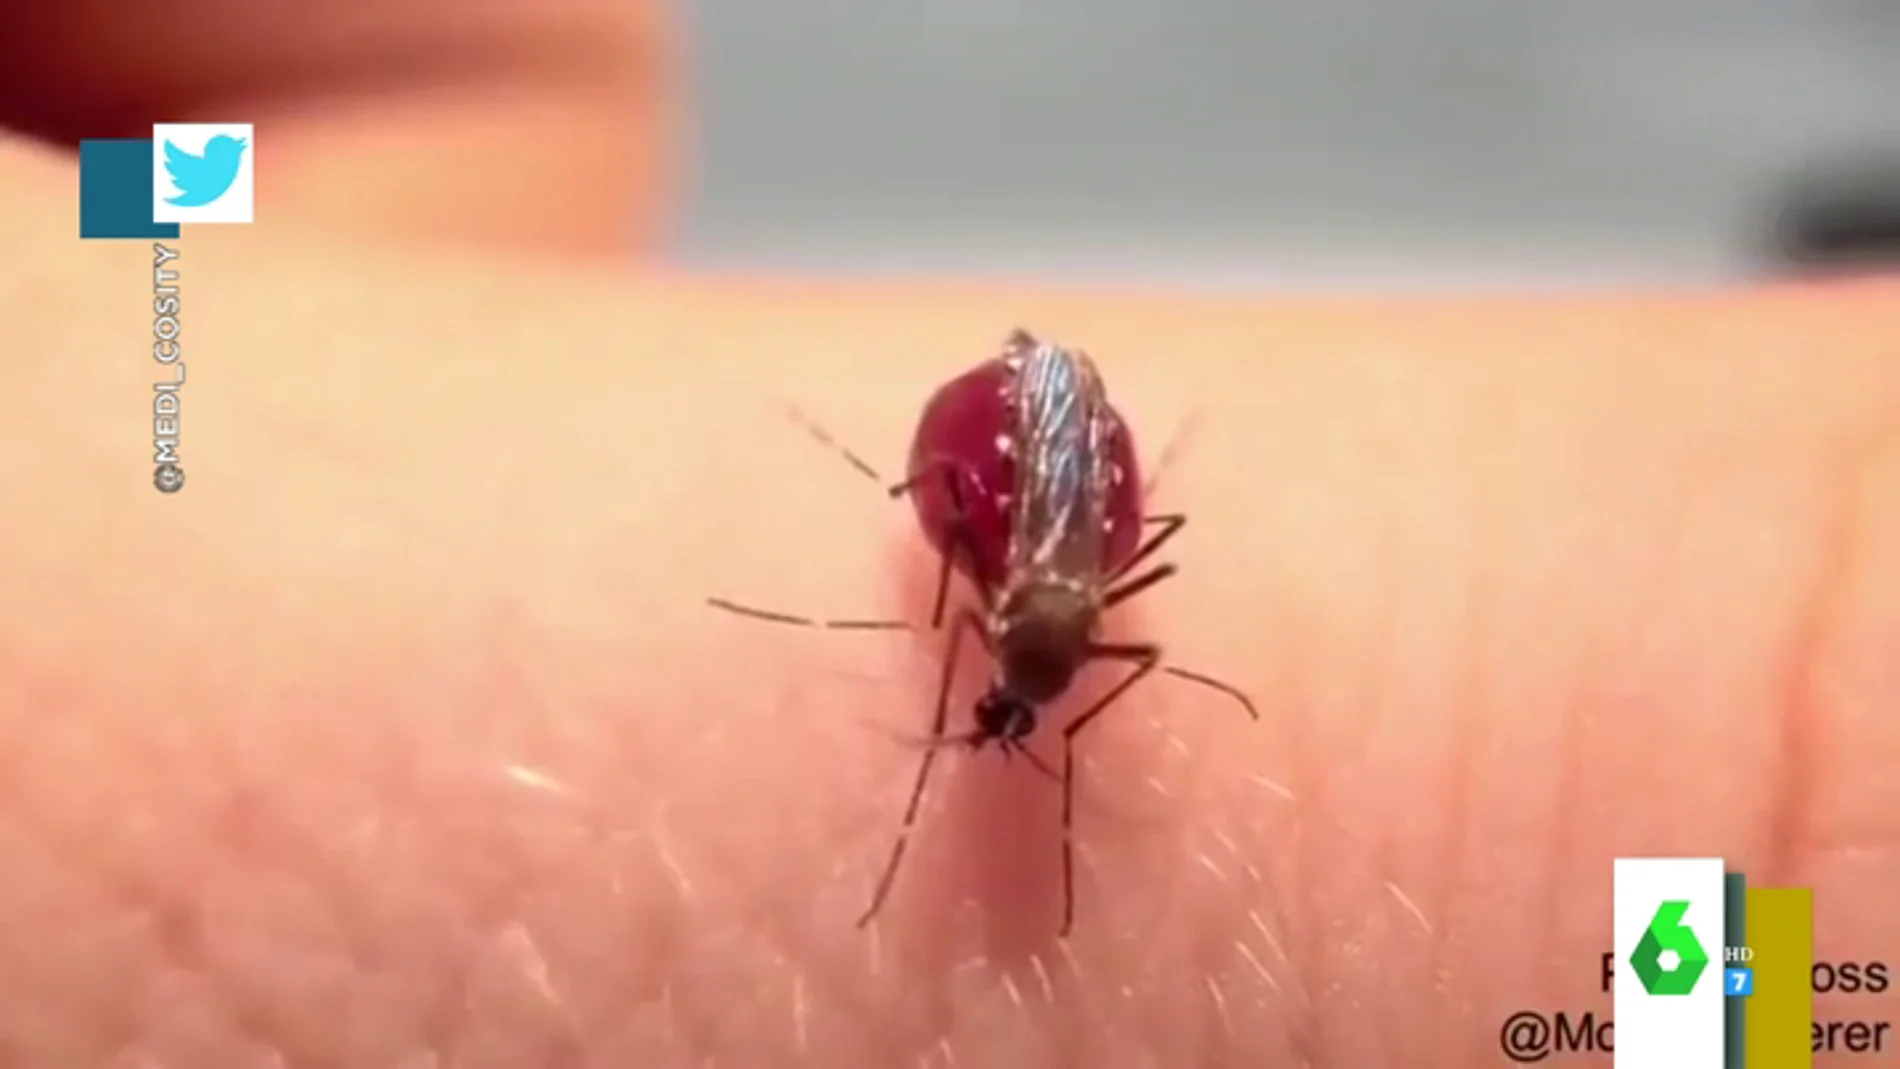 El momento en el que un mosquito revienta tras chupar la sangre a una persona